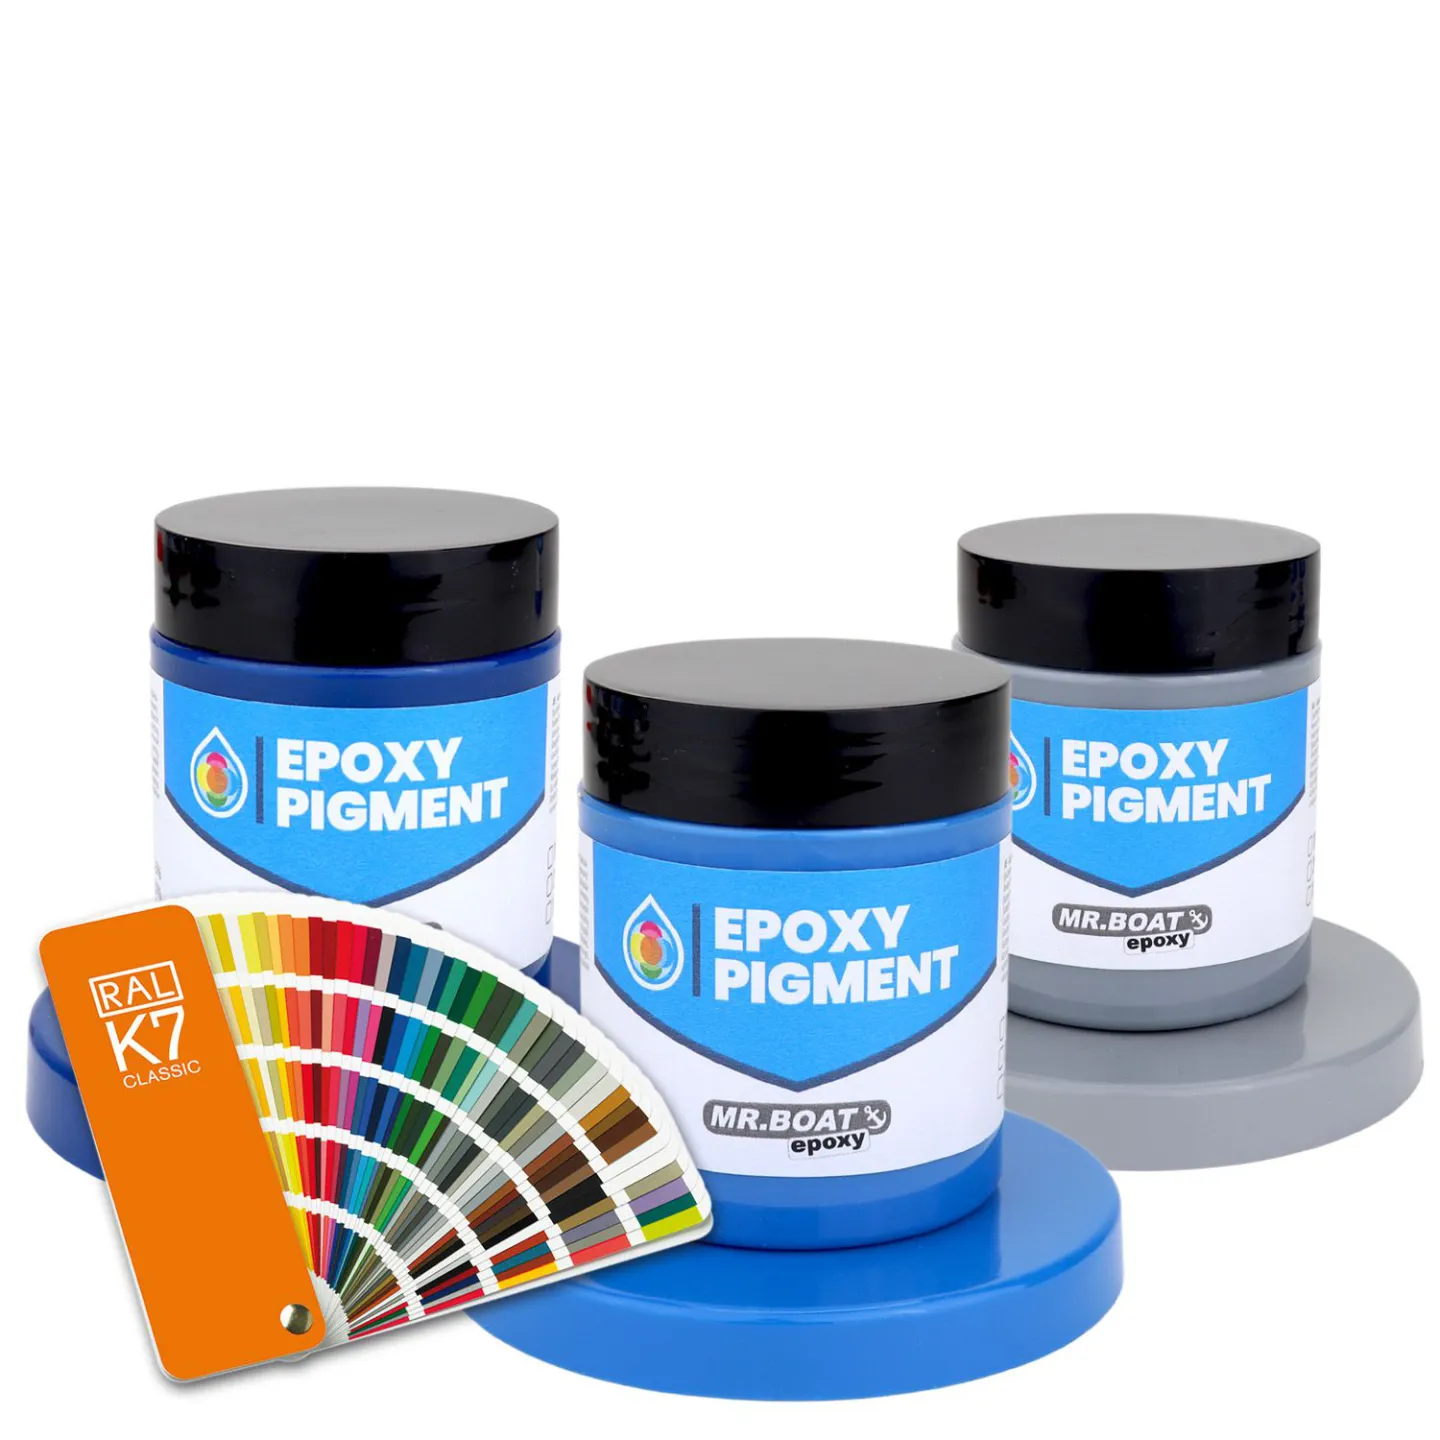 RAL epoxy pigment.